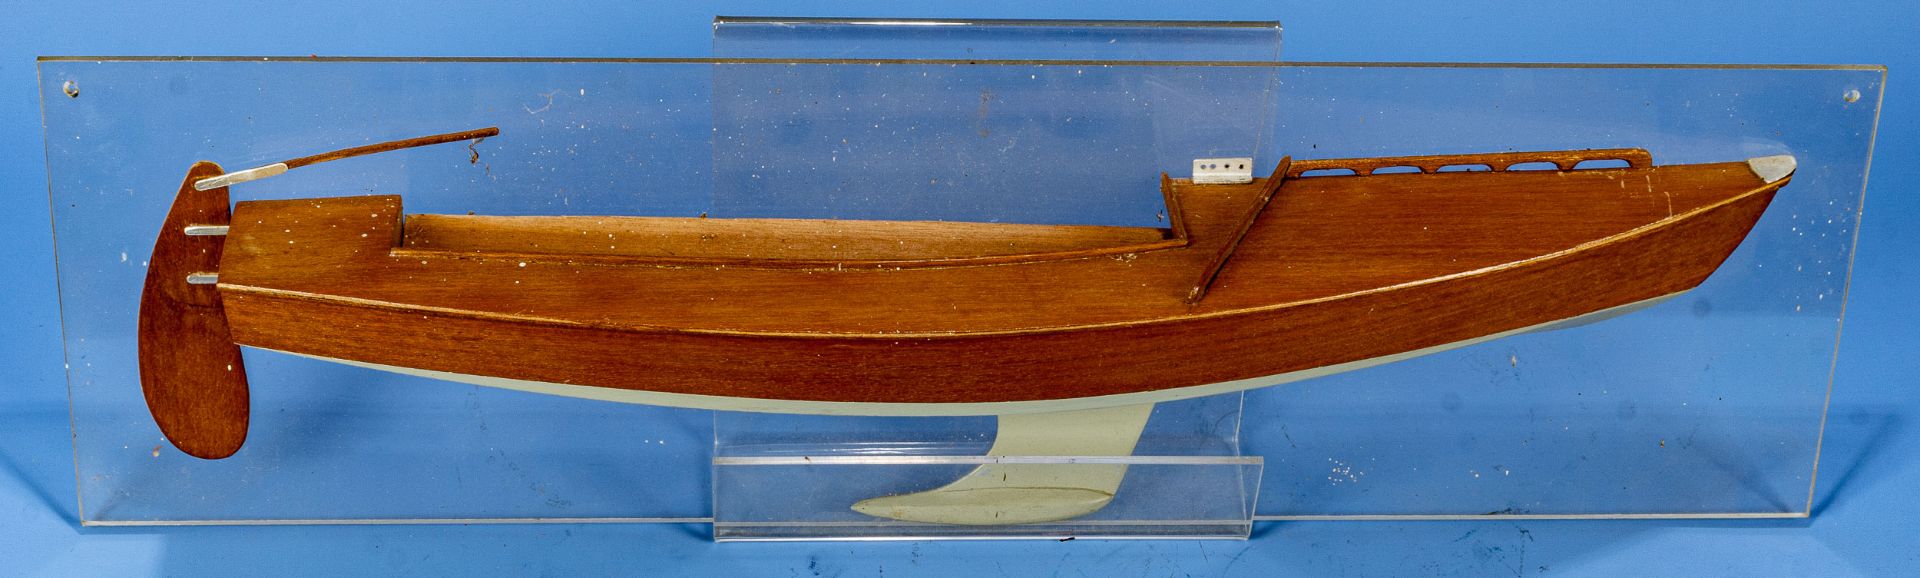 Halbmodell eines Segelschiffes, auf Fiberglas montiertes, lackiertes und furniertes Holzmodell; Pla - Bild 2 aus 4